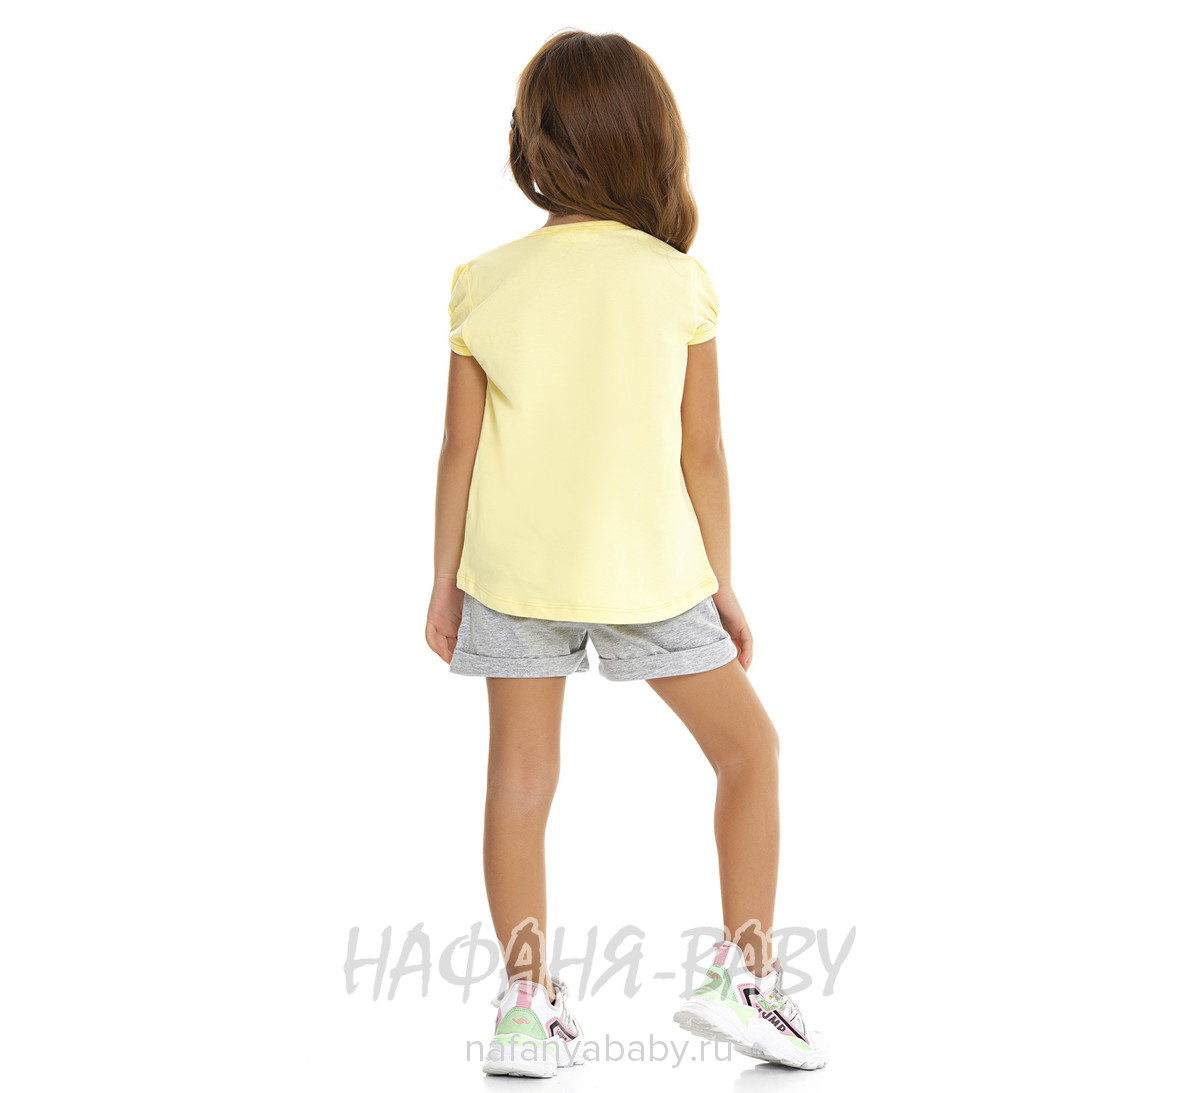 Костюм (футболка + шорты)  PF арт: 6593, 1-4 года, 5-9 лет, цвет желтый, оптом Турция